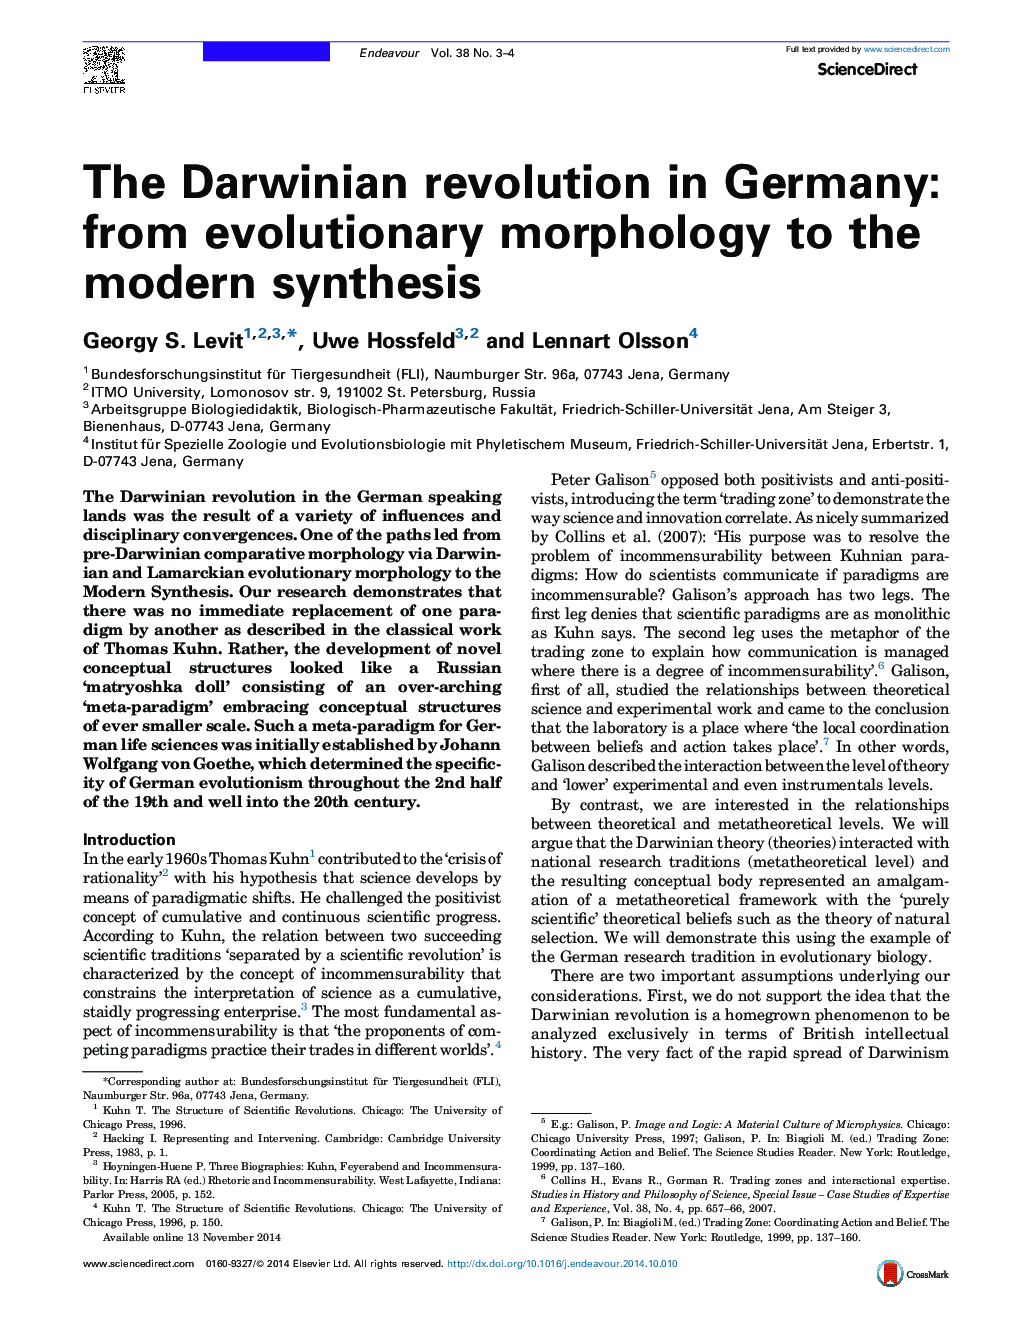 انقلاب داروینی در آلمان: از مورفولوژی تکامل به سنتز مدرن 